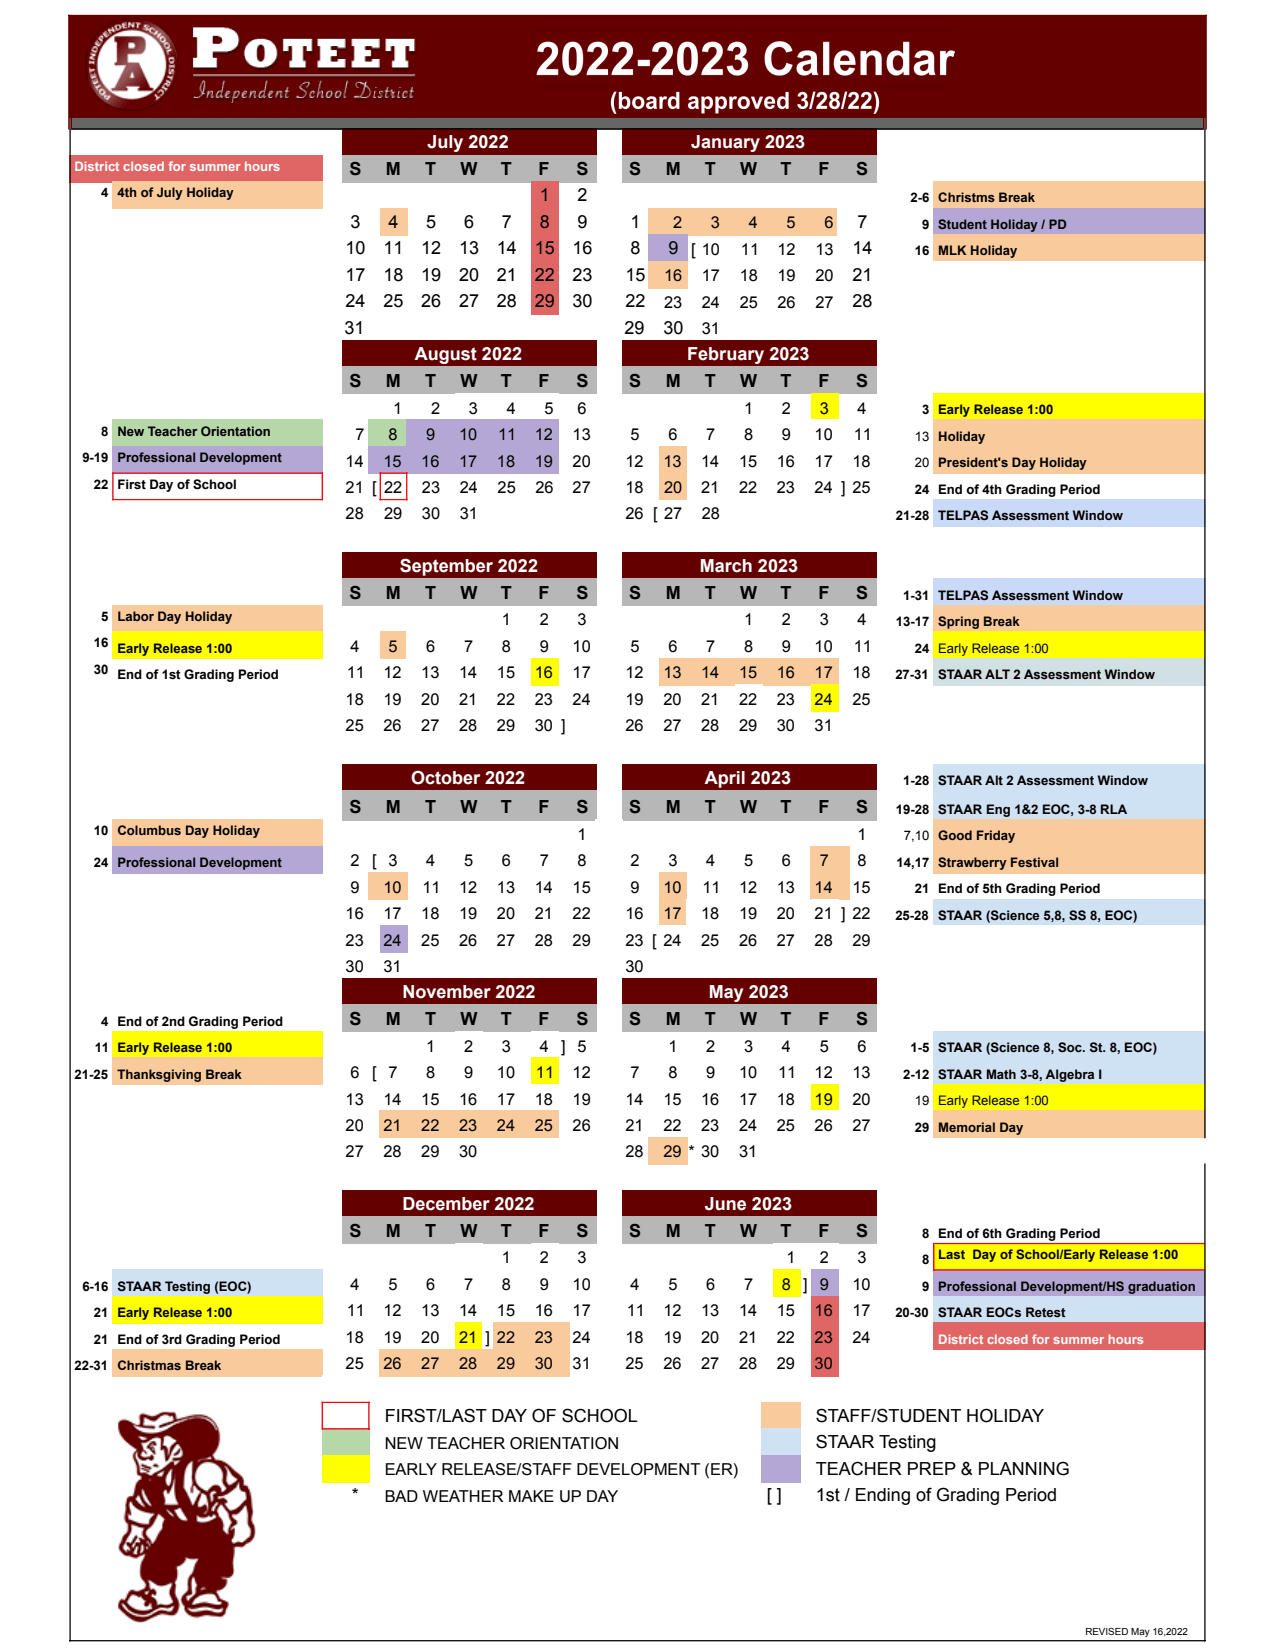 Academic Calendar - Poteet Independent School District